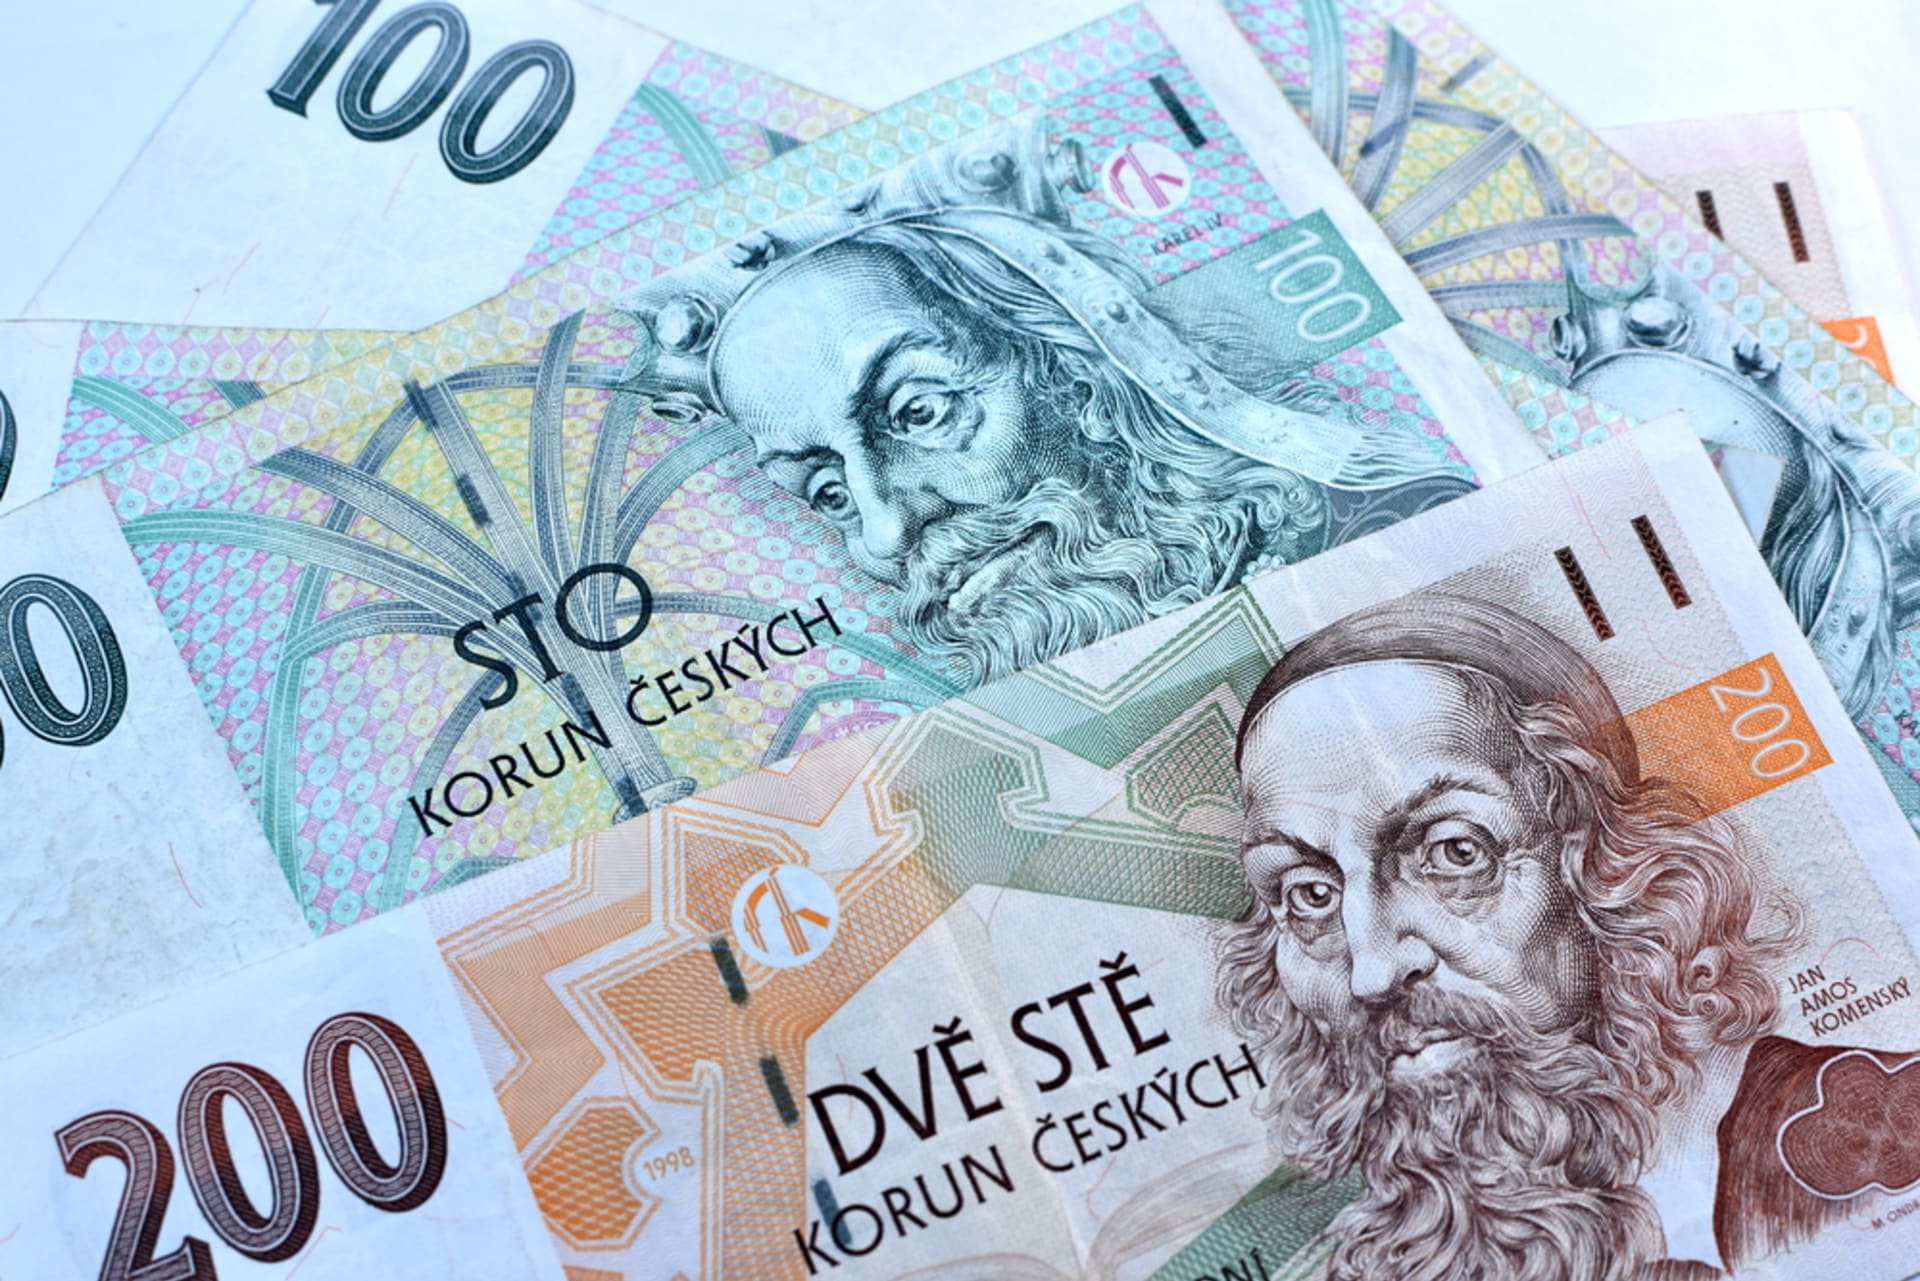 Bankovky v hodnotě 100 a 200 korun, které od 1. července pozbyly své platnosti. Poznáme je například podle příliš úzkého kovového ochranného proužku.